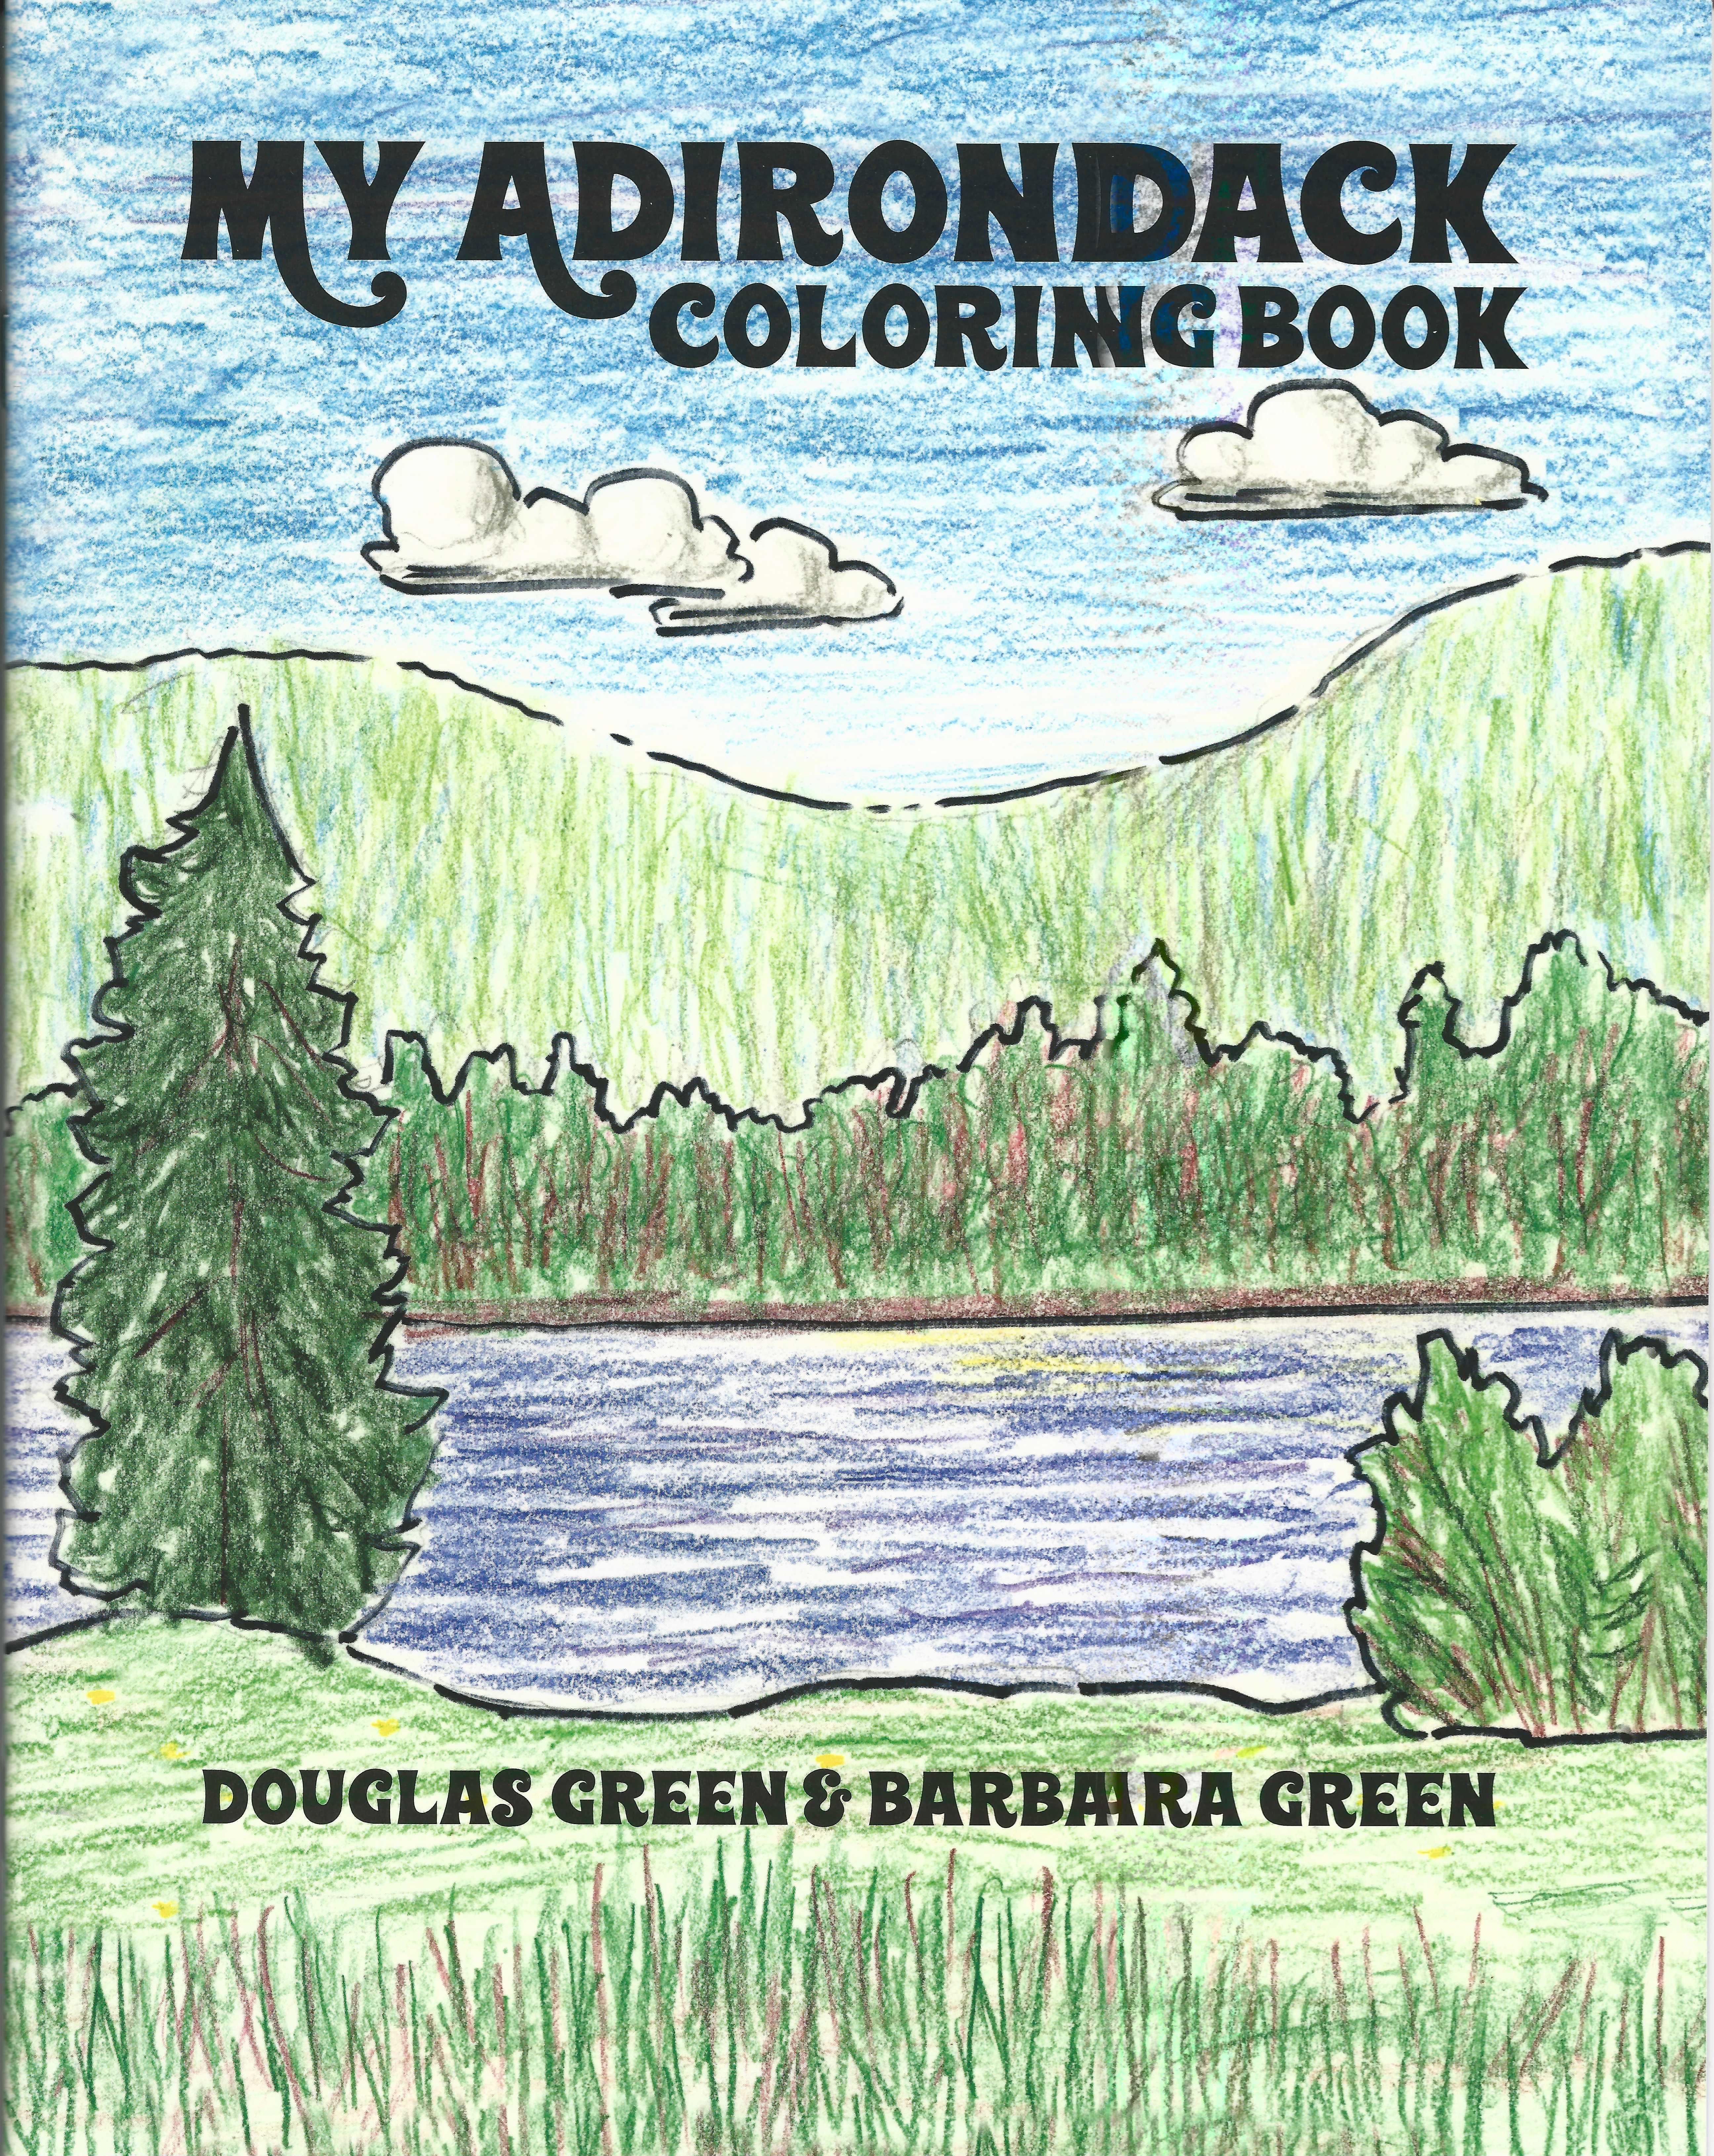 Adirondack coloring book